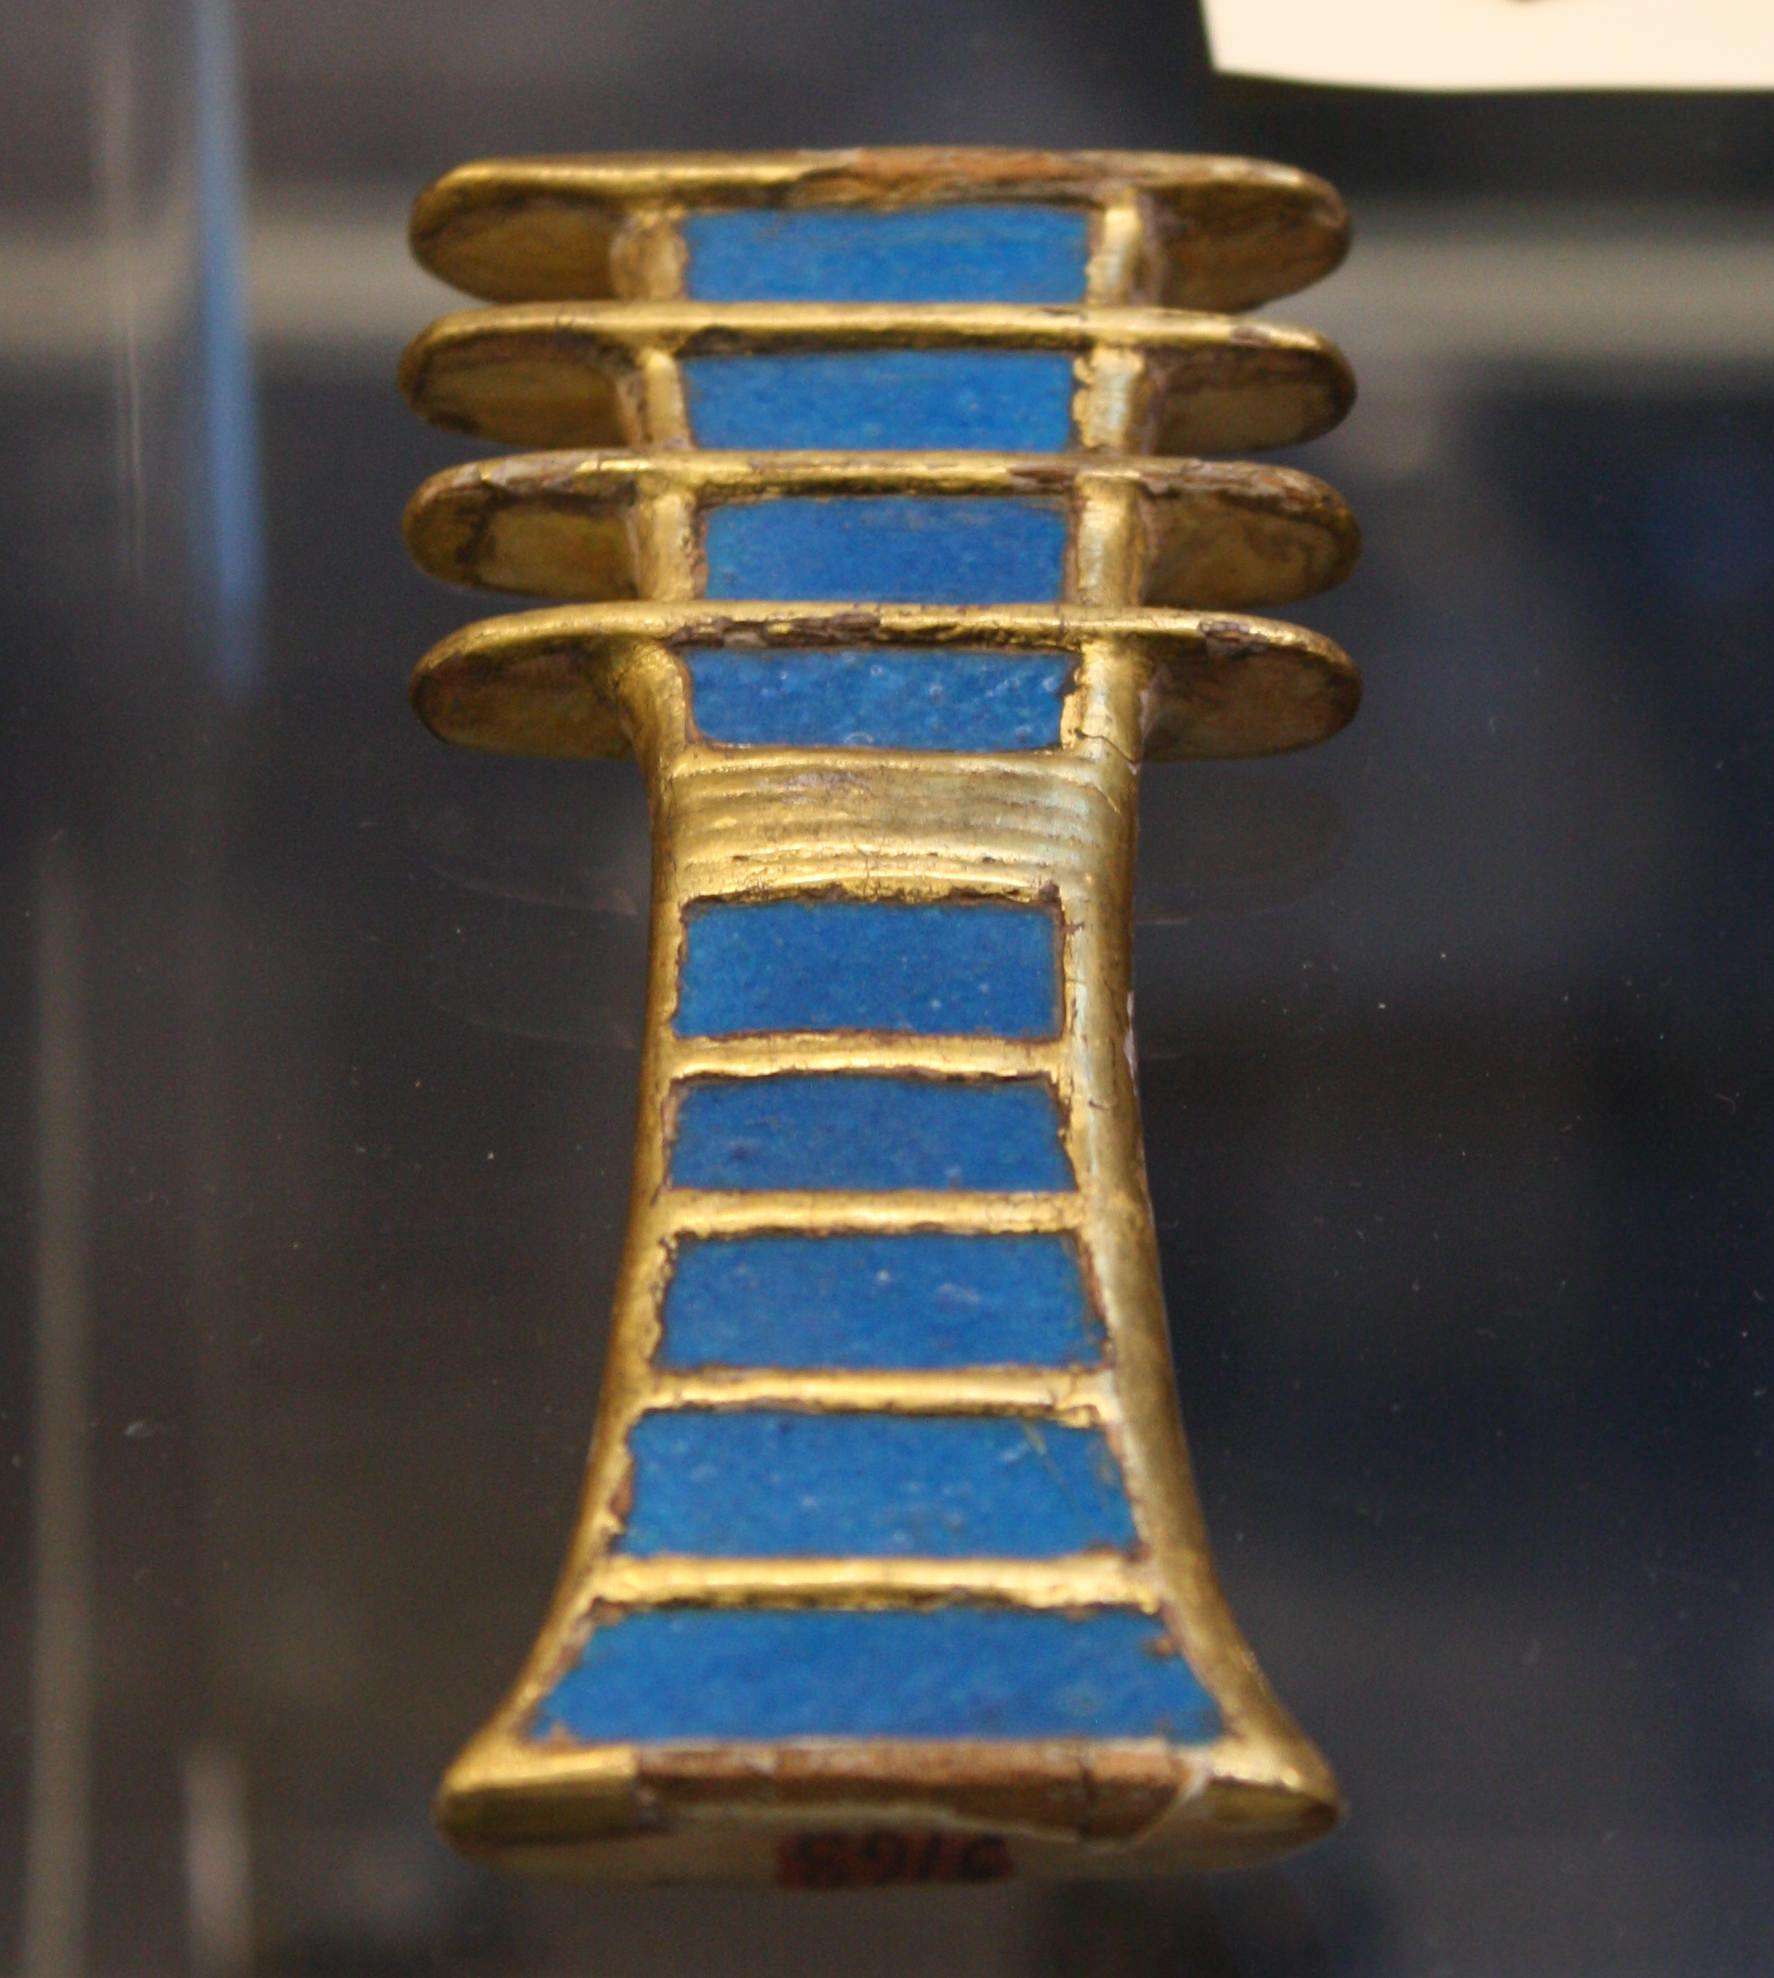 Une amulette djed en bois doré et faïence (symbole de stabilité) provenant du tombeau de la reine Néfertari. Dynastie XIX, 1279-1213 avant notre ère. (Musée égyptien, Turin)